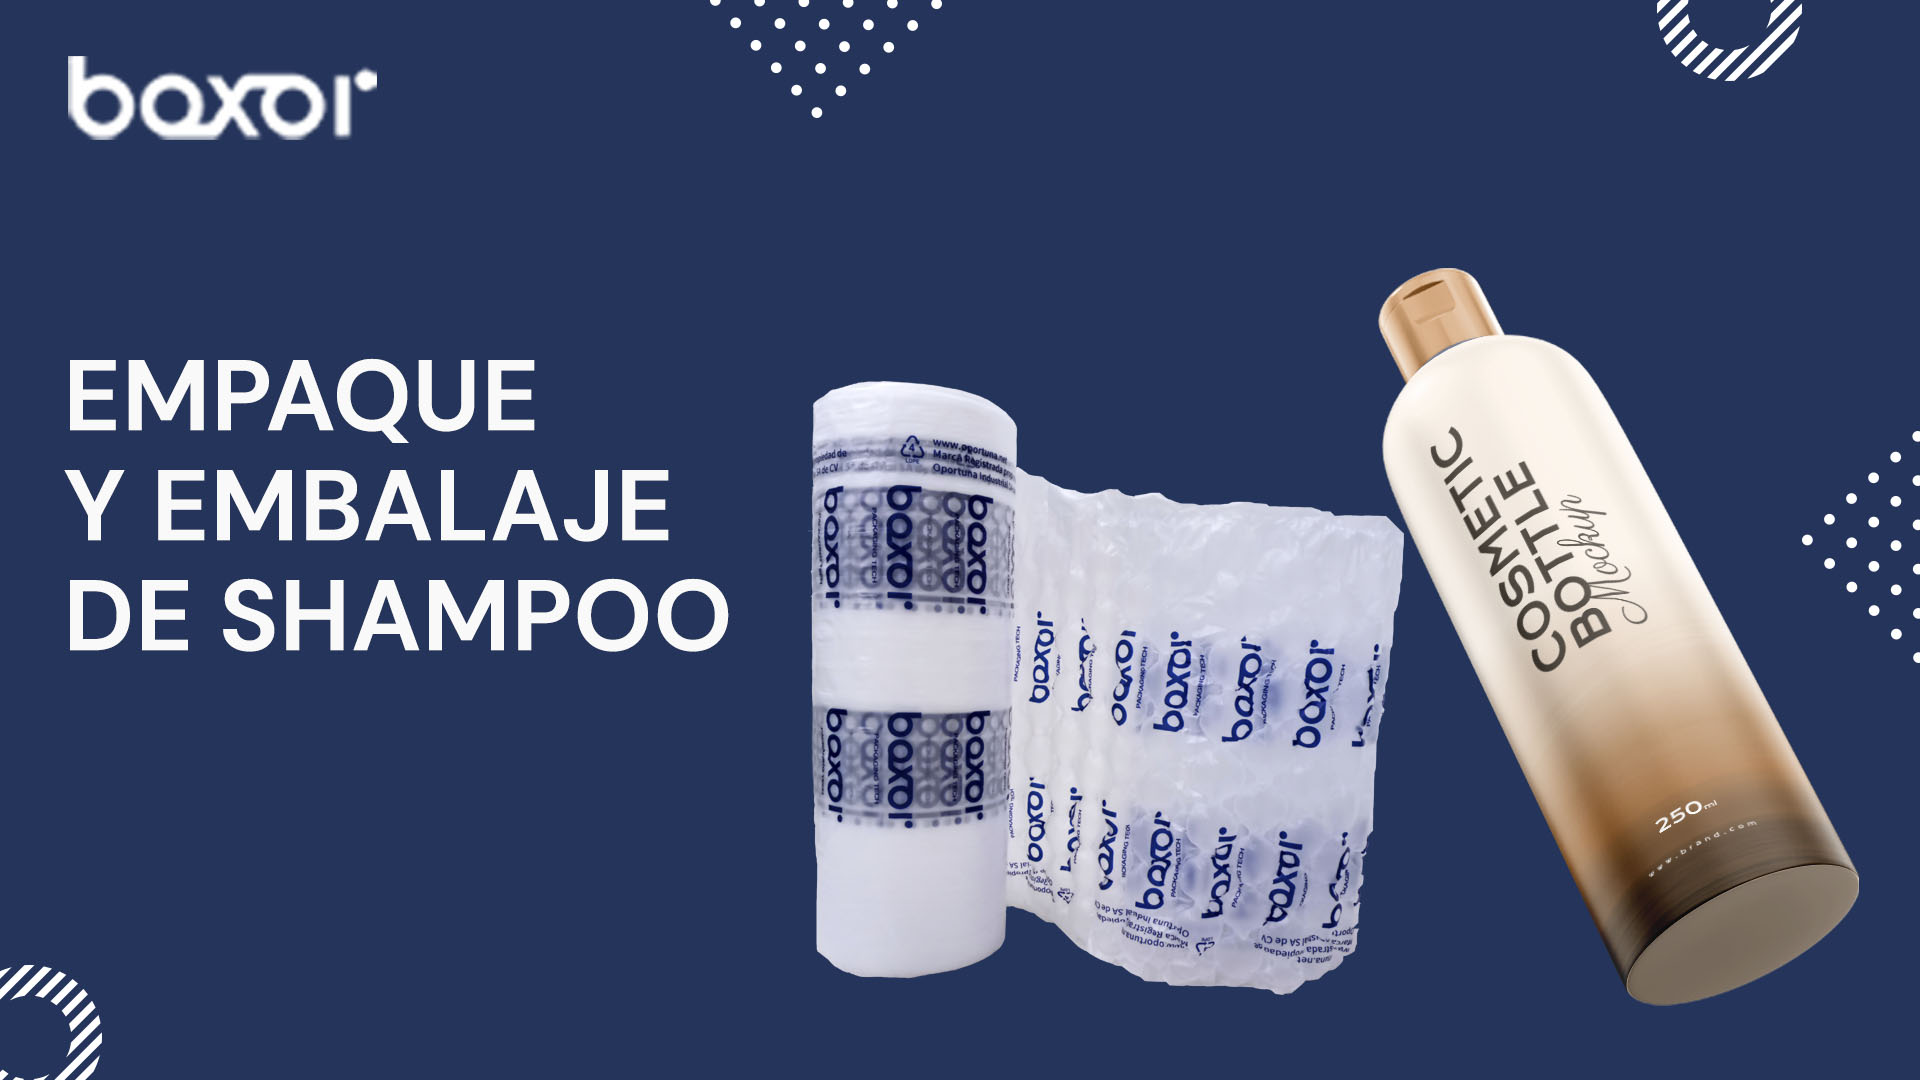 Empaque y embalaje de shampoo Empaque y embalaje de shampoo consejos - Boxor